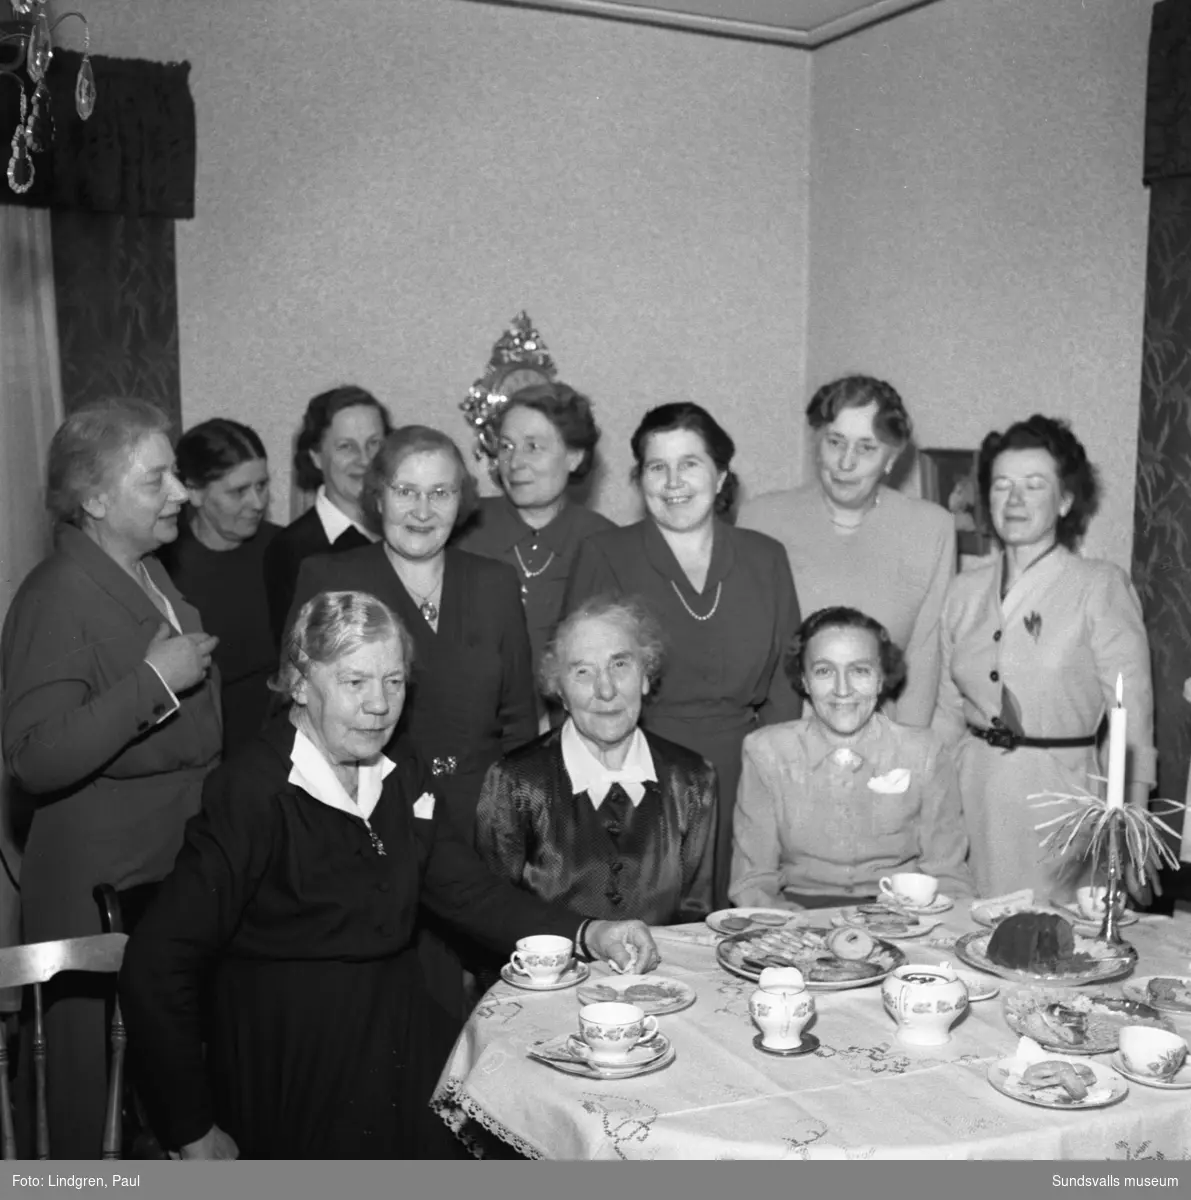 Sjuksystrar för 50 år sedan. En träff med f. d. elever och arbetskamrater vid Sundsvalls lasarett hemma hos sjuksköterskan, fröken Hanna Öfvergren (snart 80 år) på Örnsköldsallén. På bild 2 ses sjuksöterskorna (från vänster) Astrid Lind-Johansson, Kerstin Dahlin och längst till höger Elsa Flensjö. I mitten sitter fröken Hanna Öfvergren omgiven av sina forna elever.